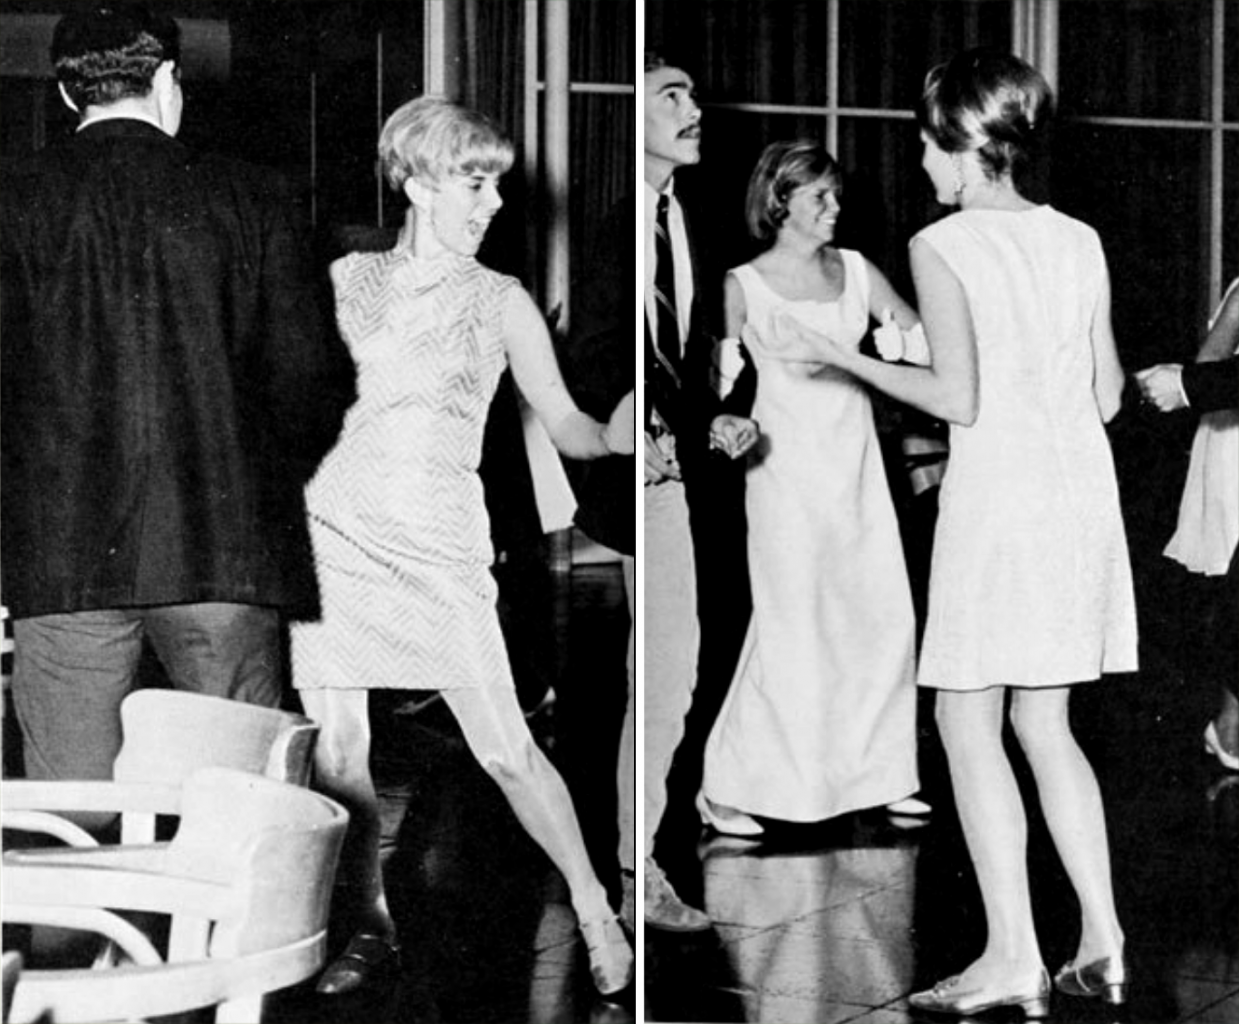 College Dance Days: 25 Photos from 1968-1971 - Flashbak